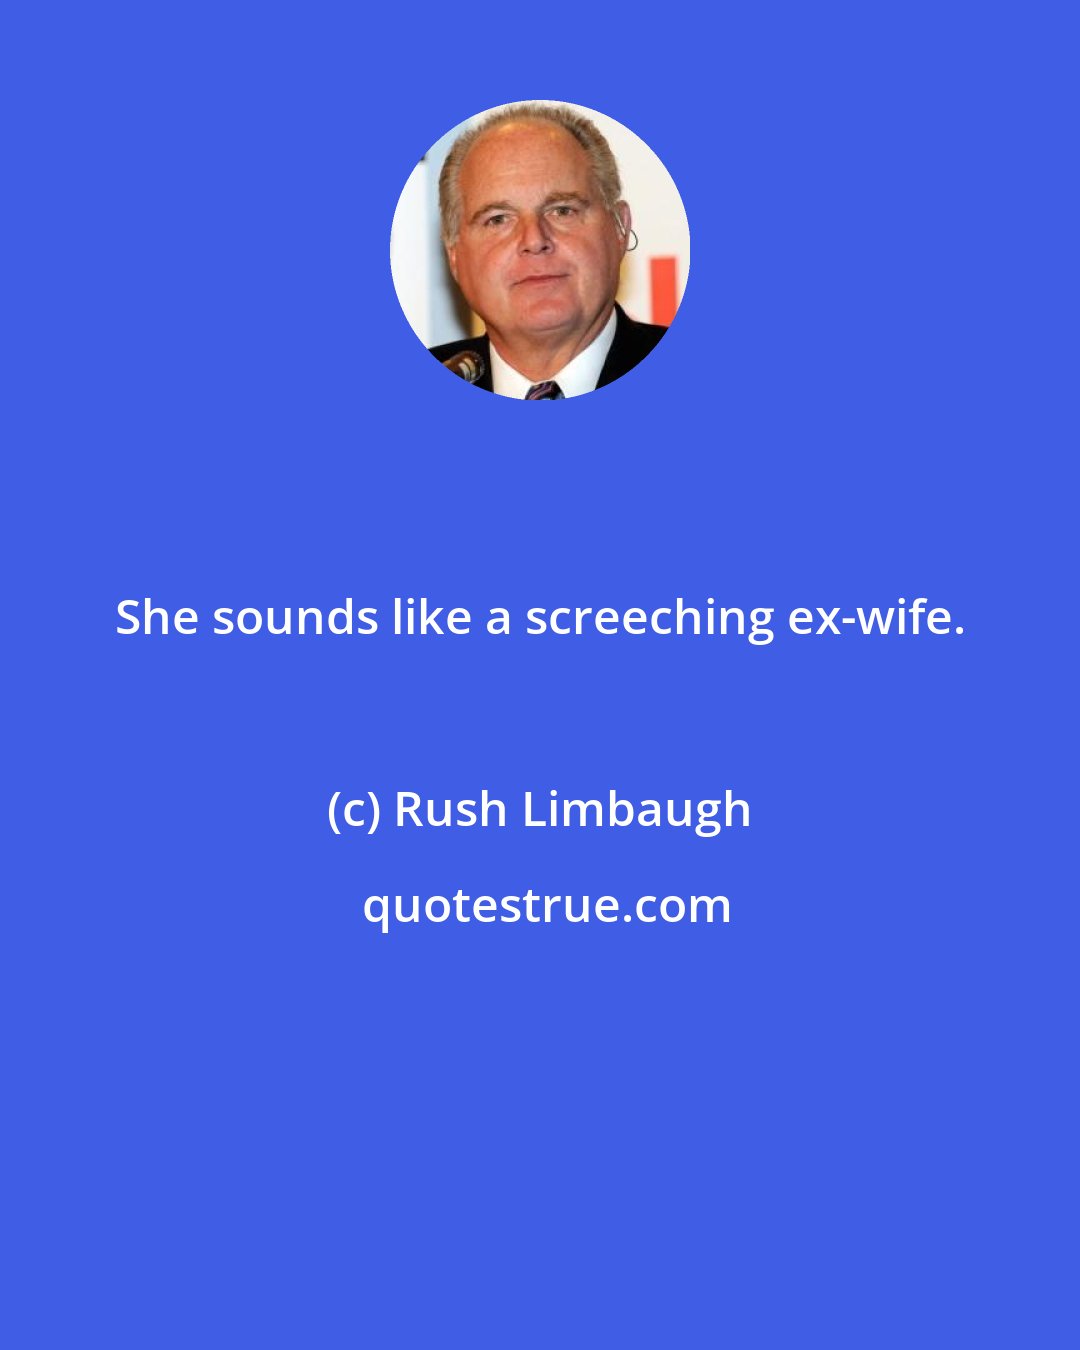 Rush Limbaugh: She sounds like a screeching ex-wife.